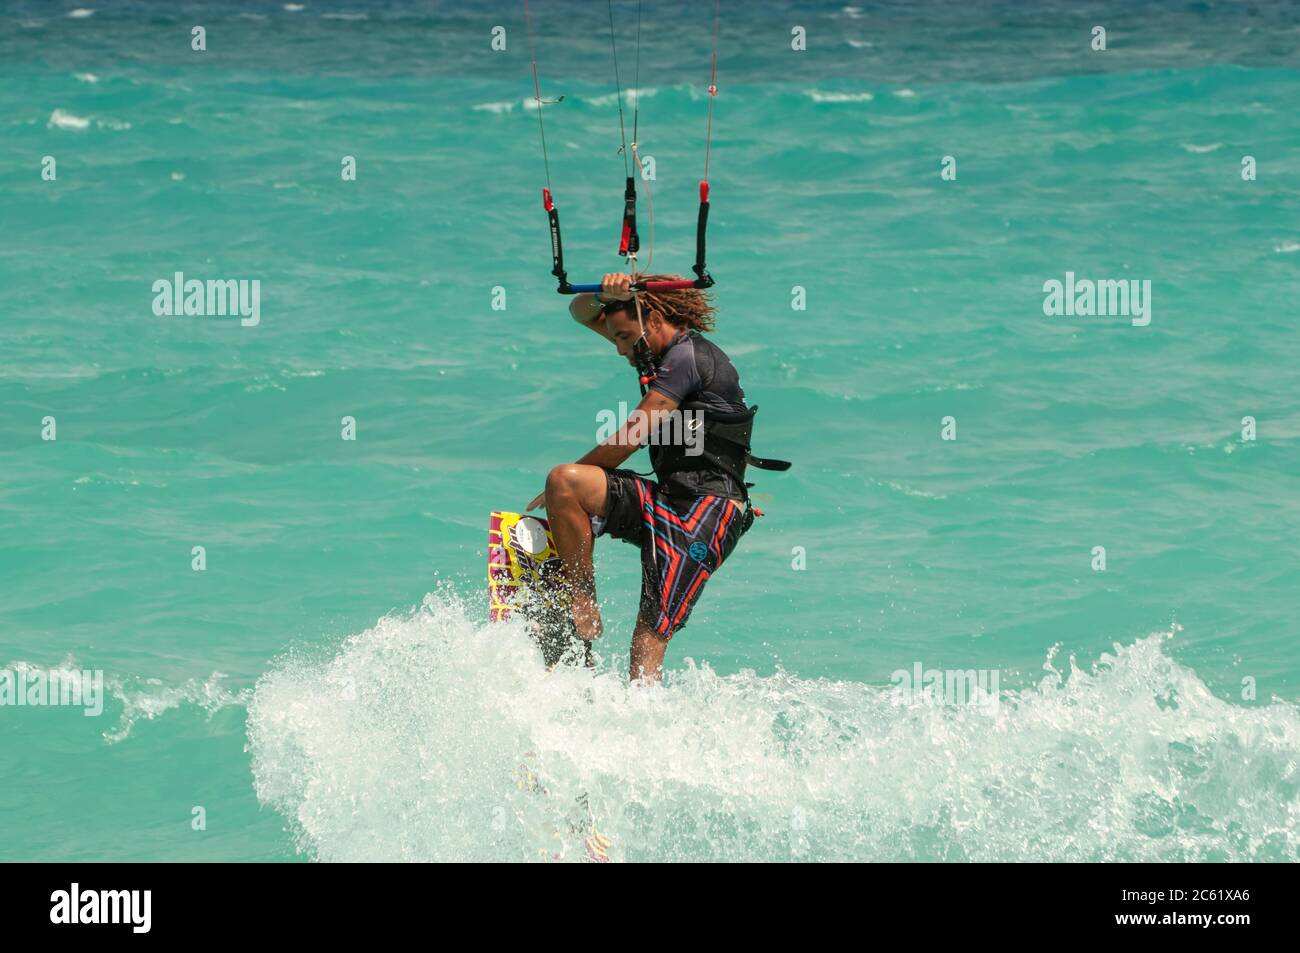 Surfista in azione, Playa del Carmen, Messico, prima della celebrazione di una gara di kite surf - sullo sfondo il mare dei Caraibi Foto Stock